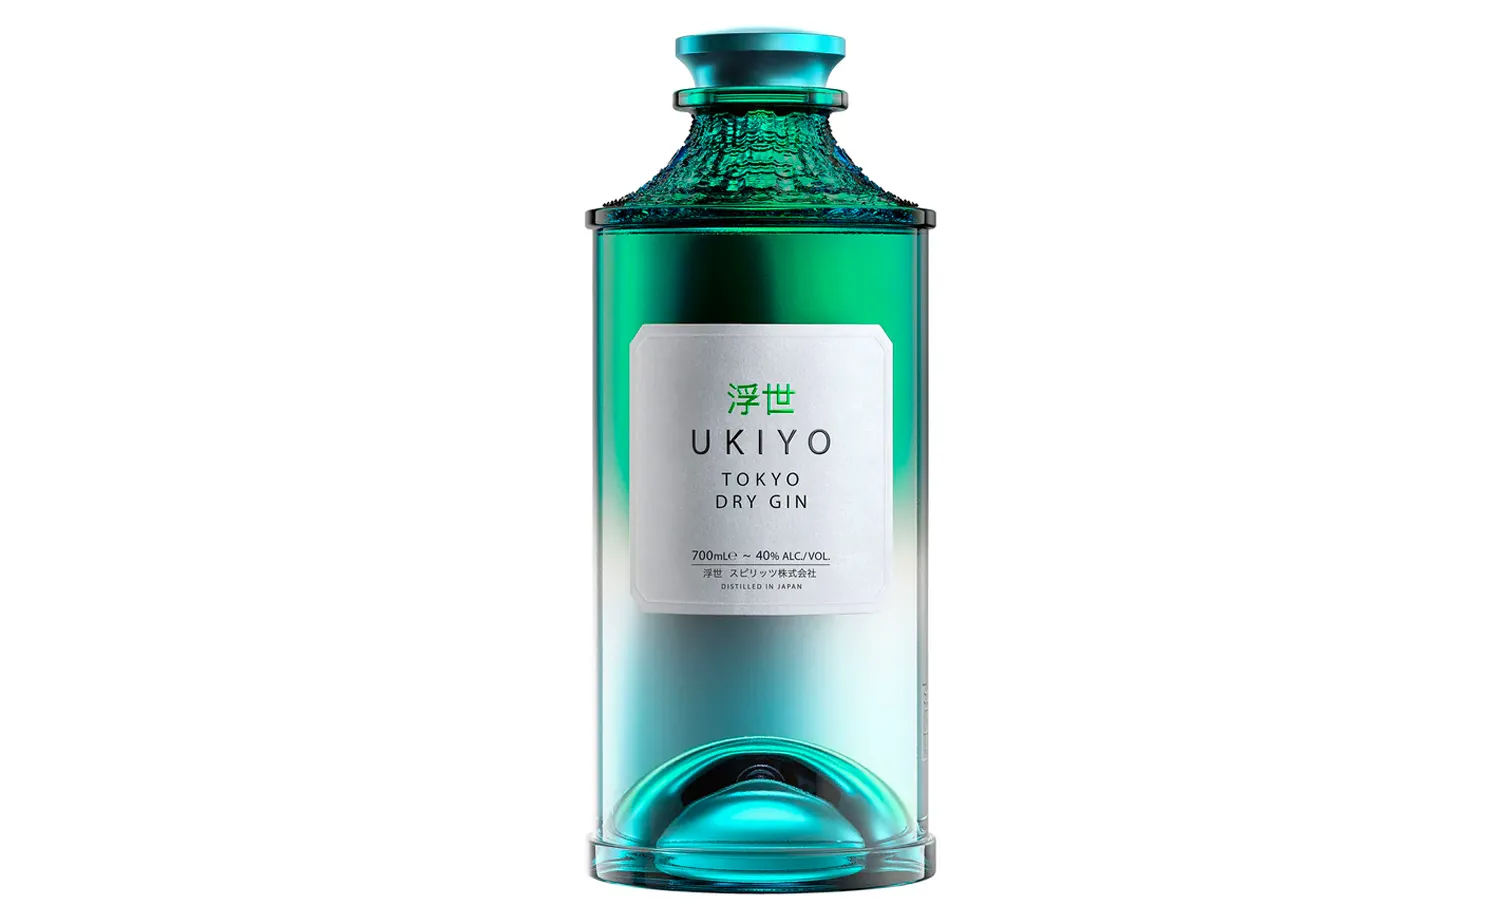 Ukiyo Spirits launches Tokyo Dry Gin